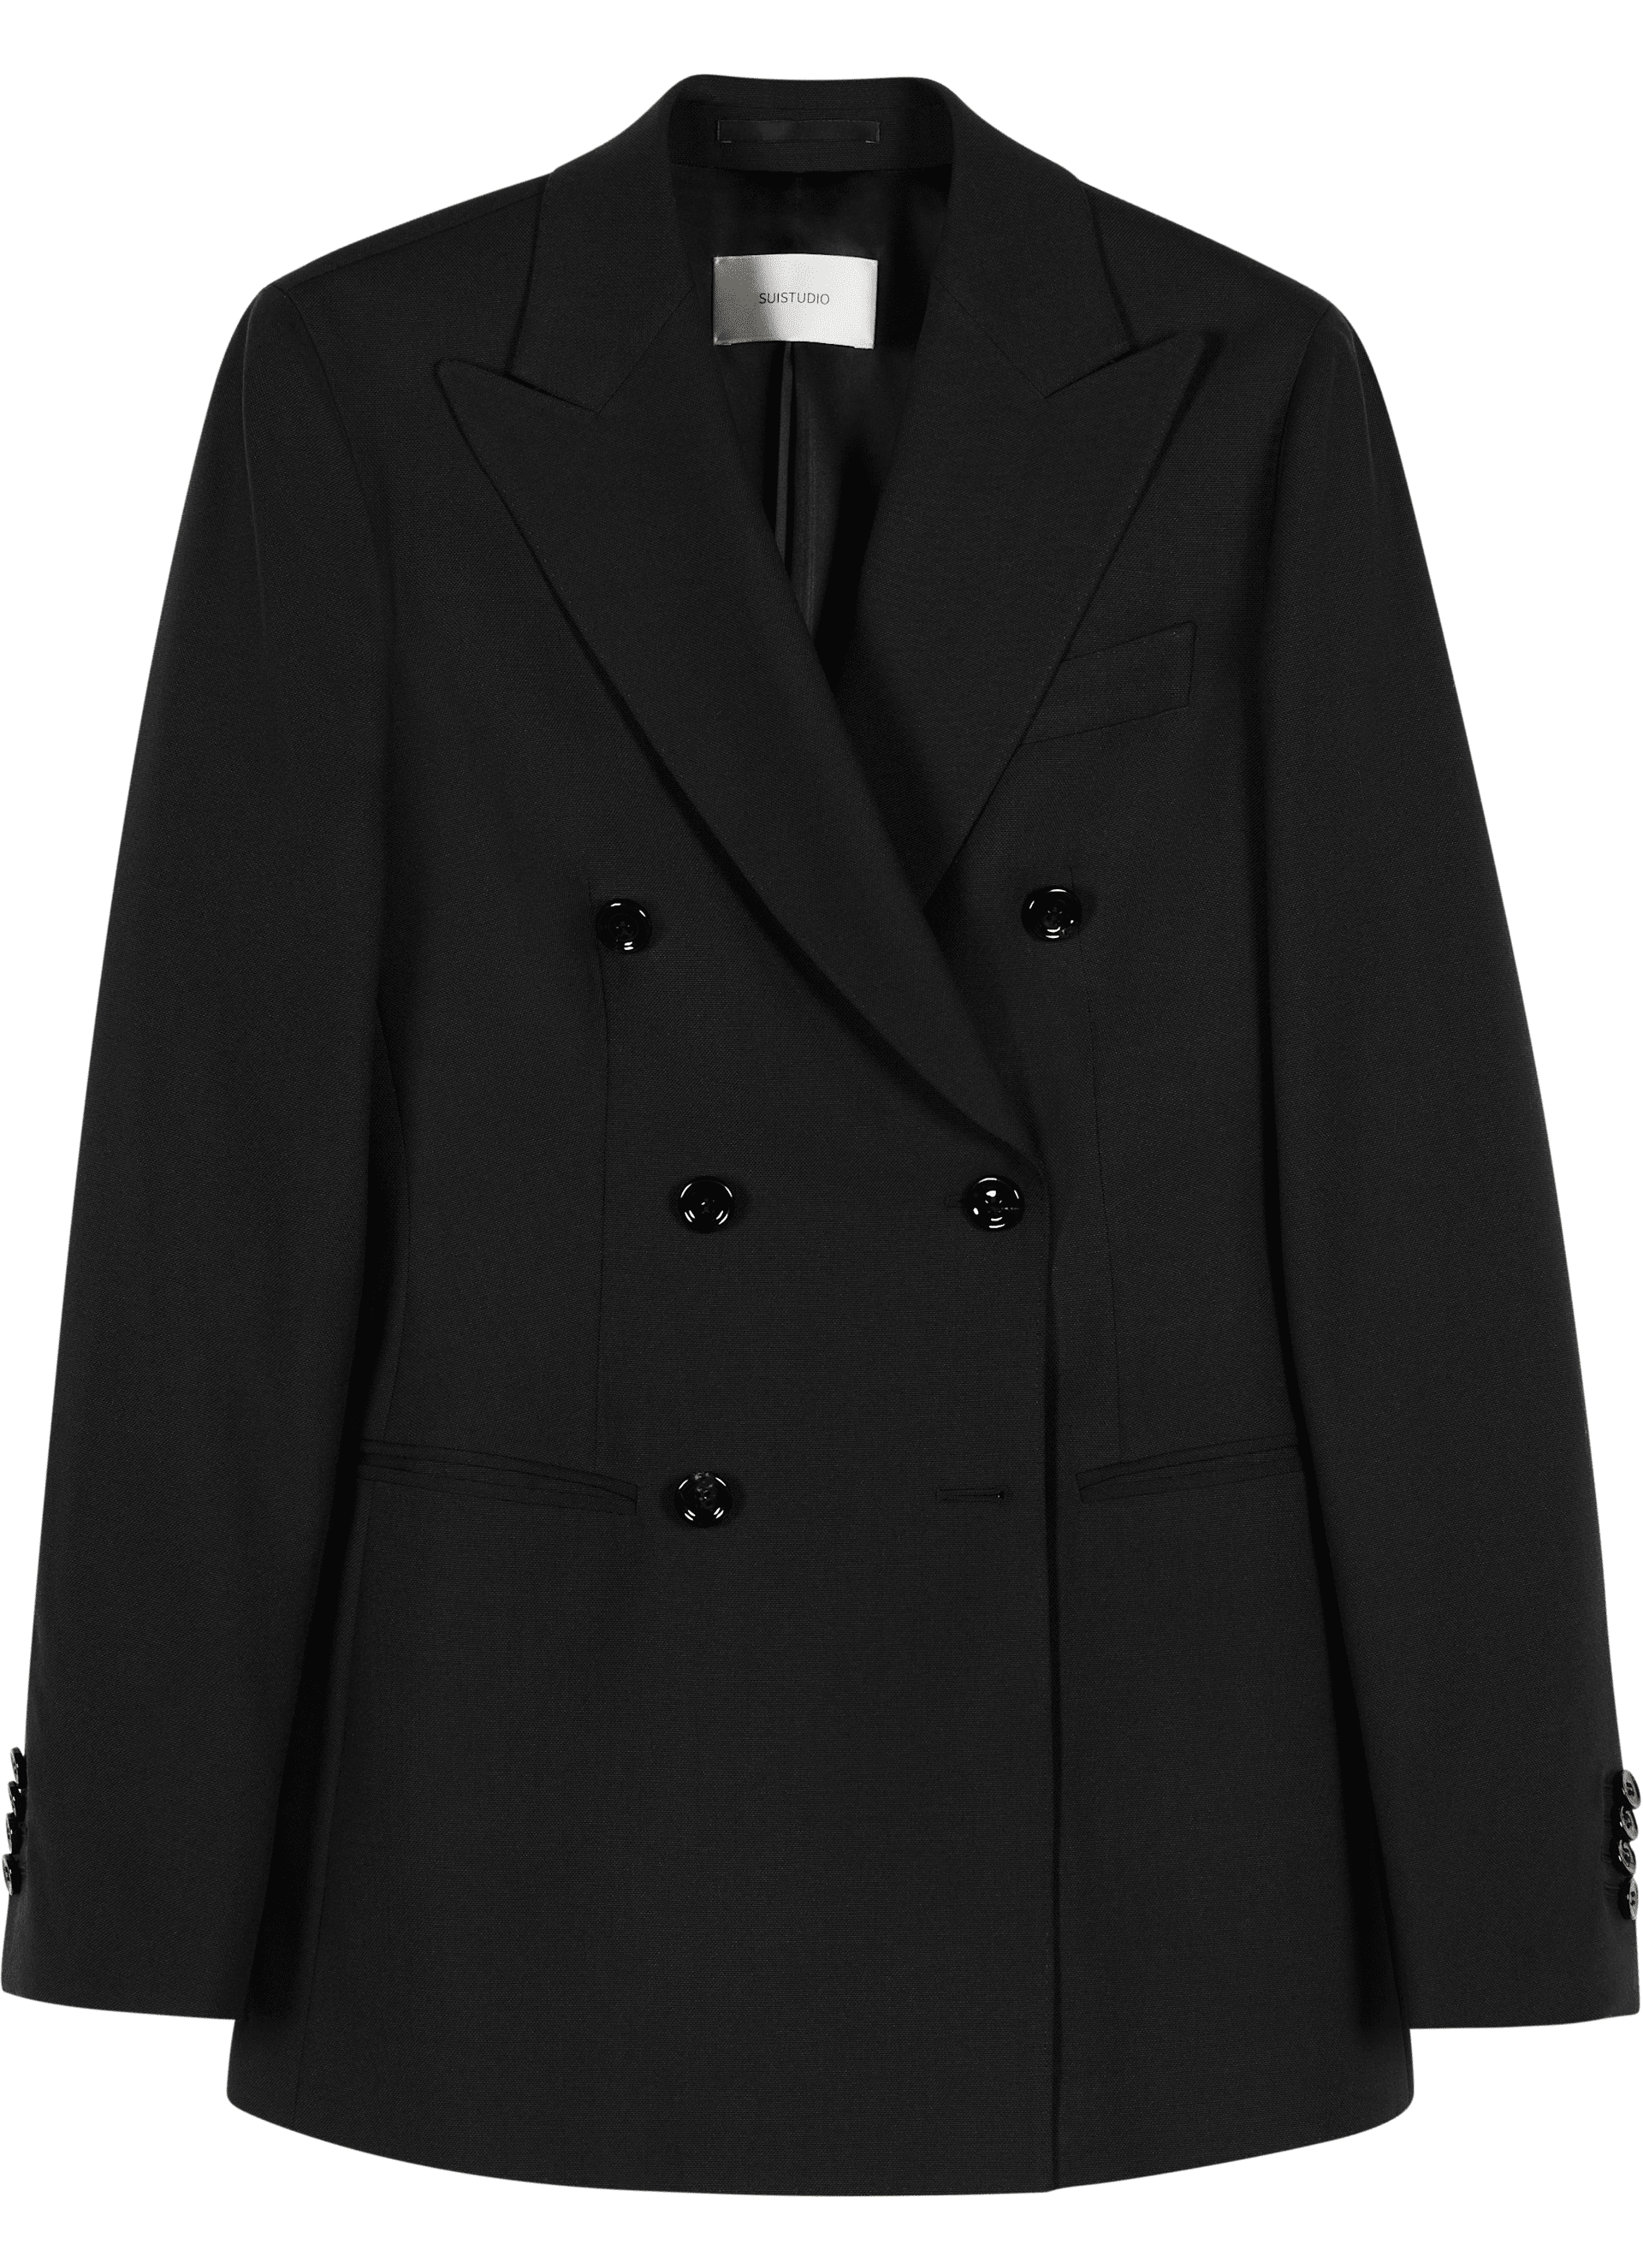 Cameron Black Suit | SUISTUDIO Online Store